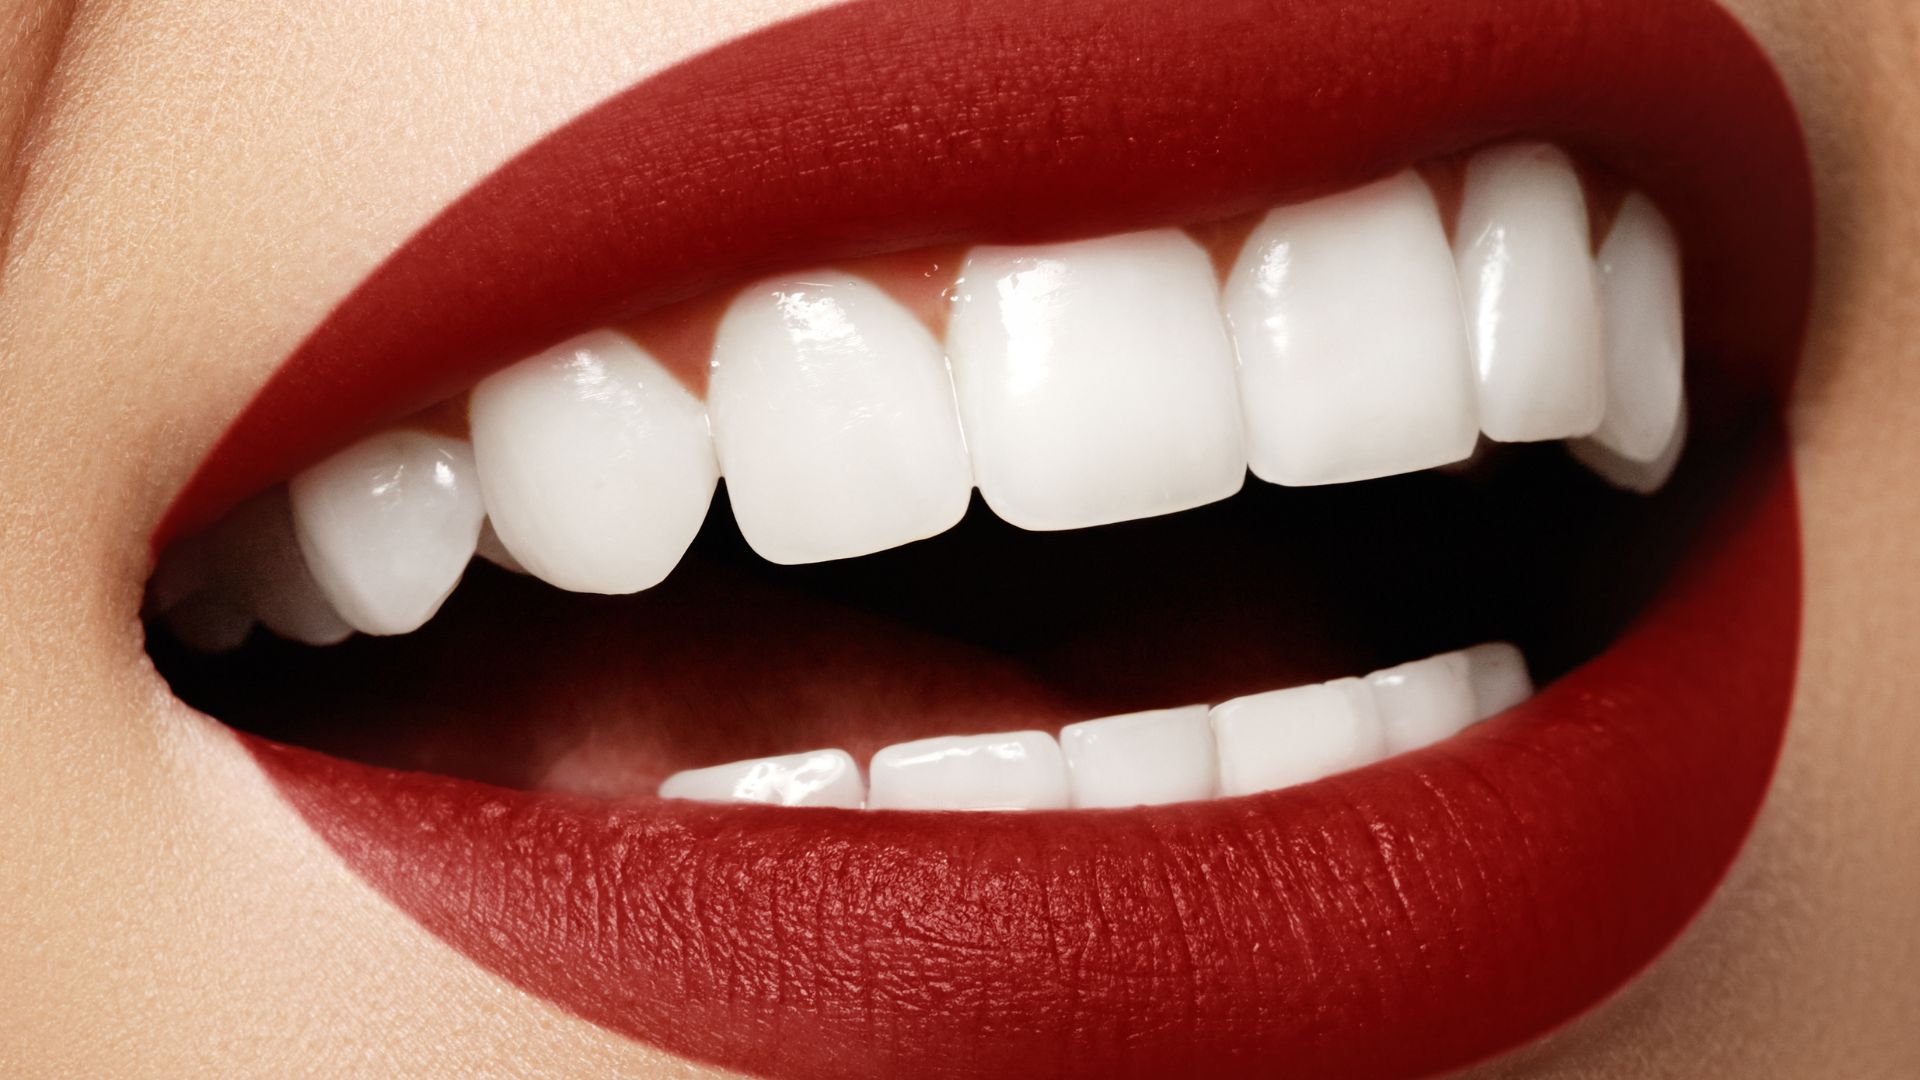 teeth-whitening at dentist in Antalya Turkey?